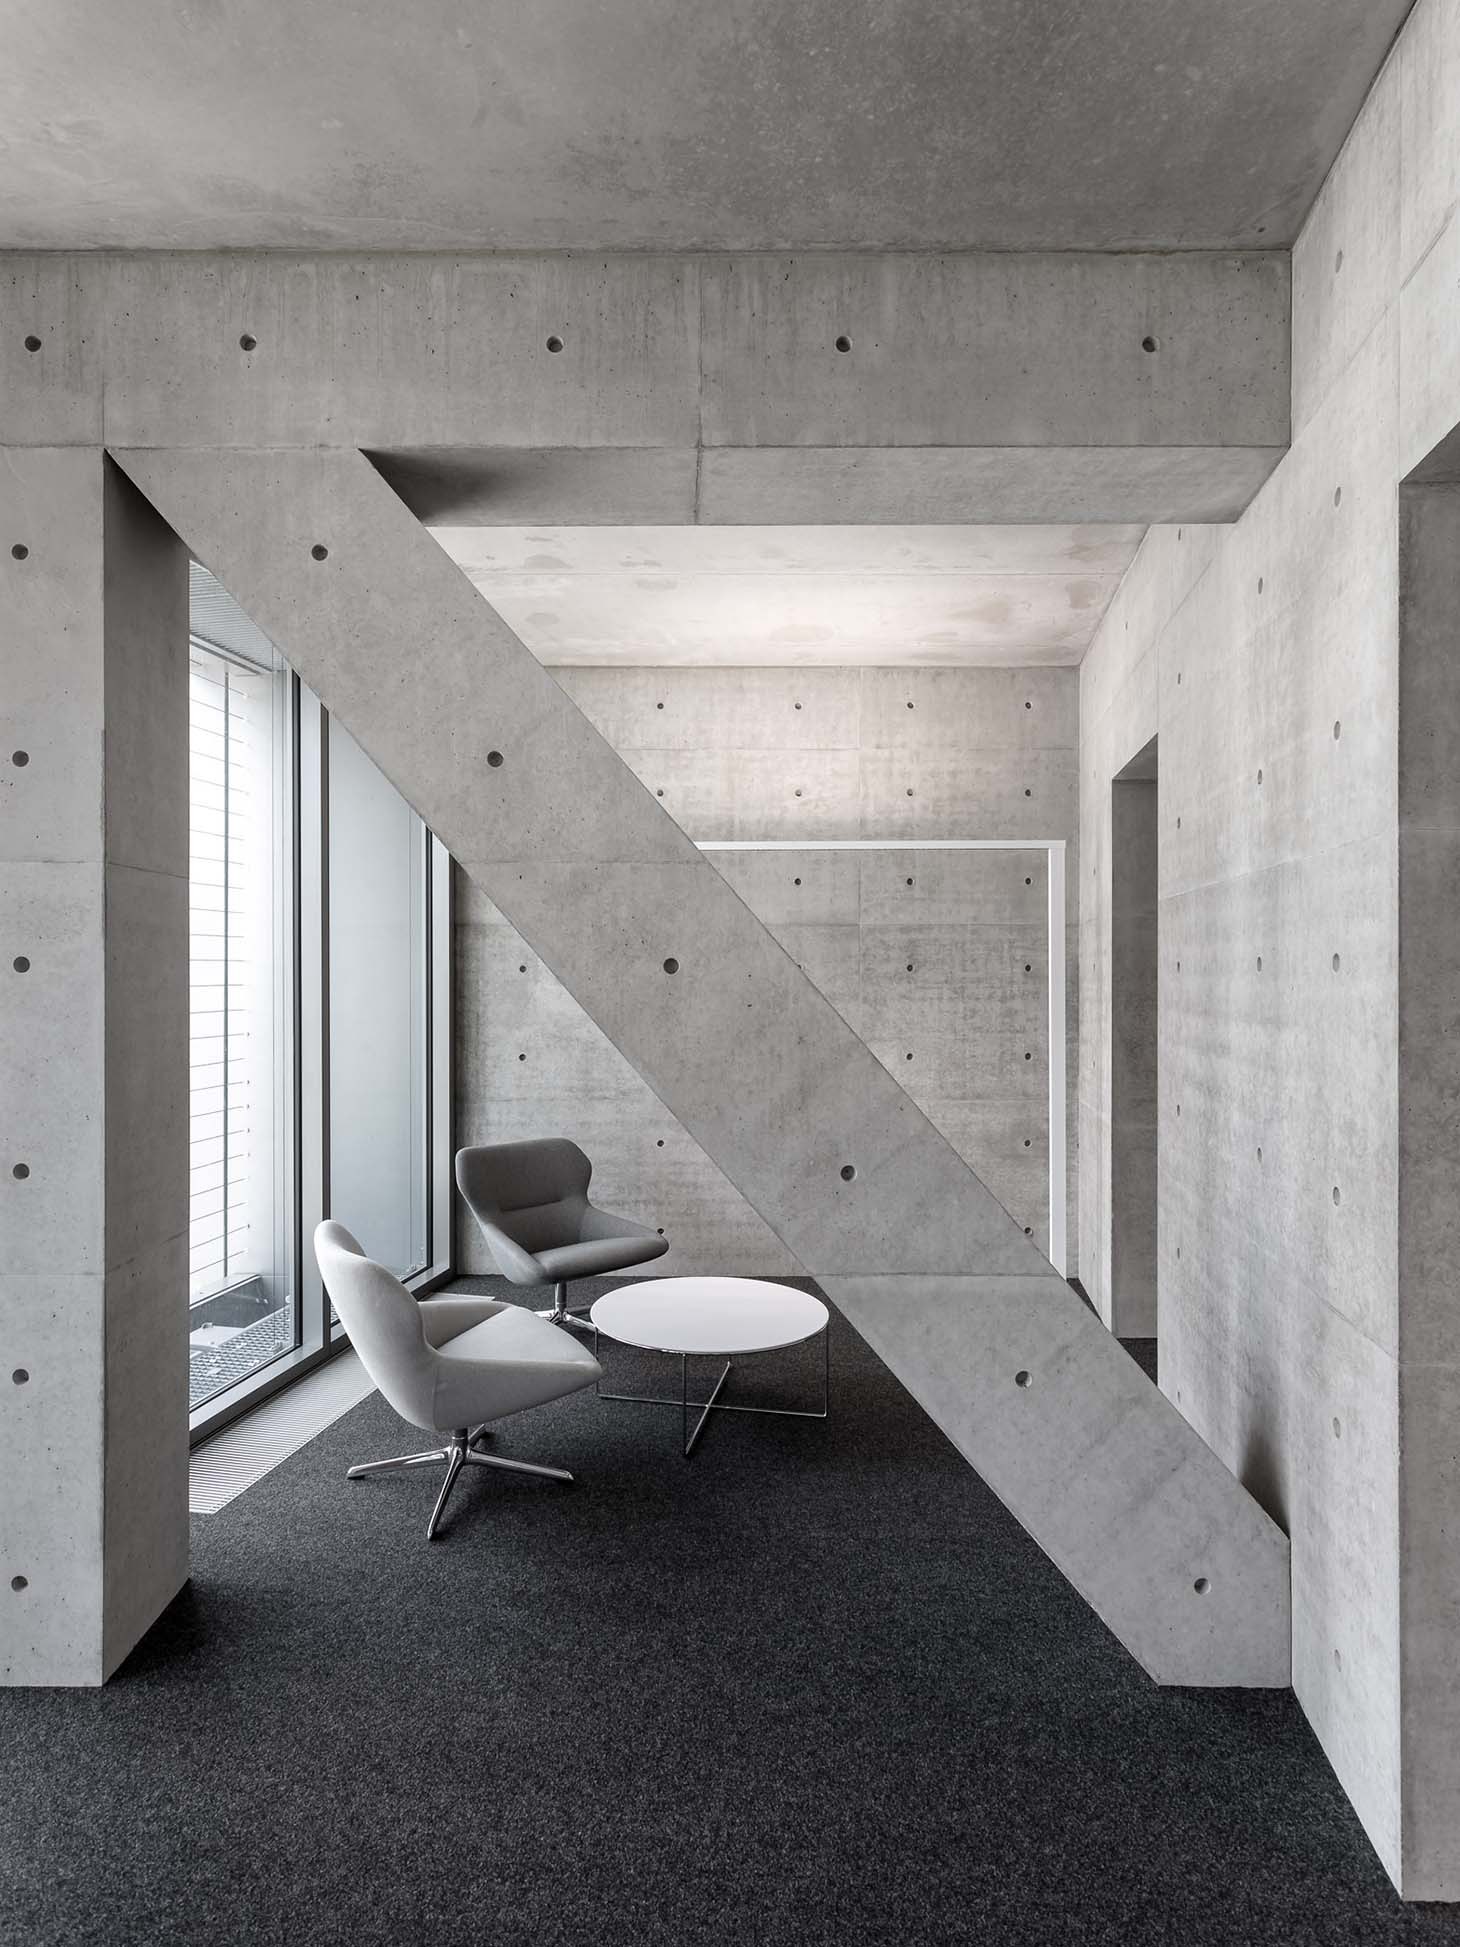 Tadao Andos Unternehmenszentrale weisenburger in der Bauwelt